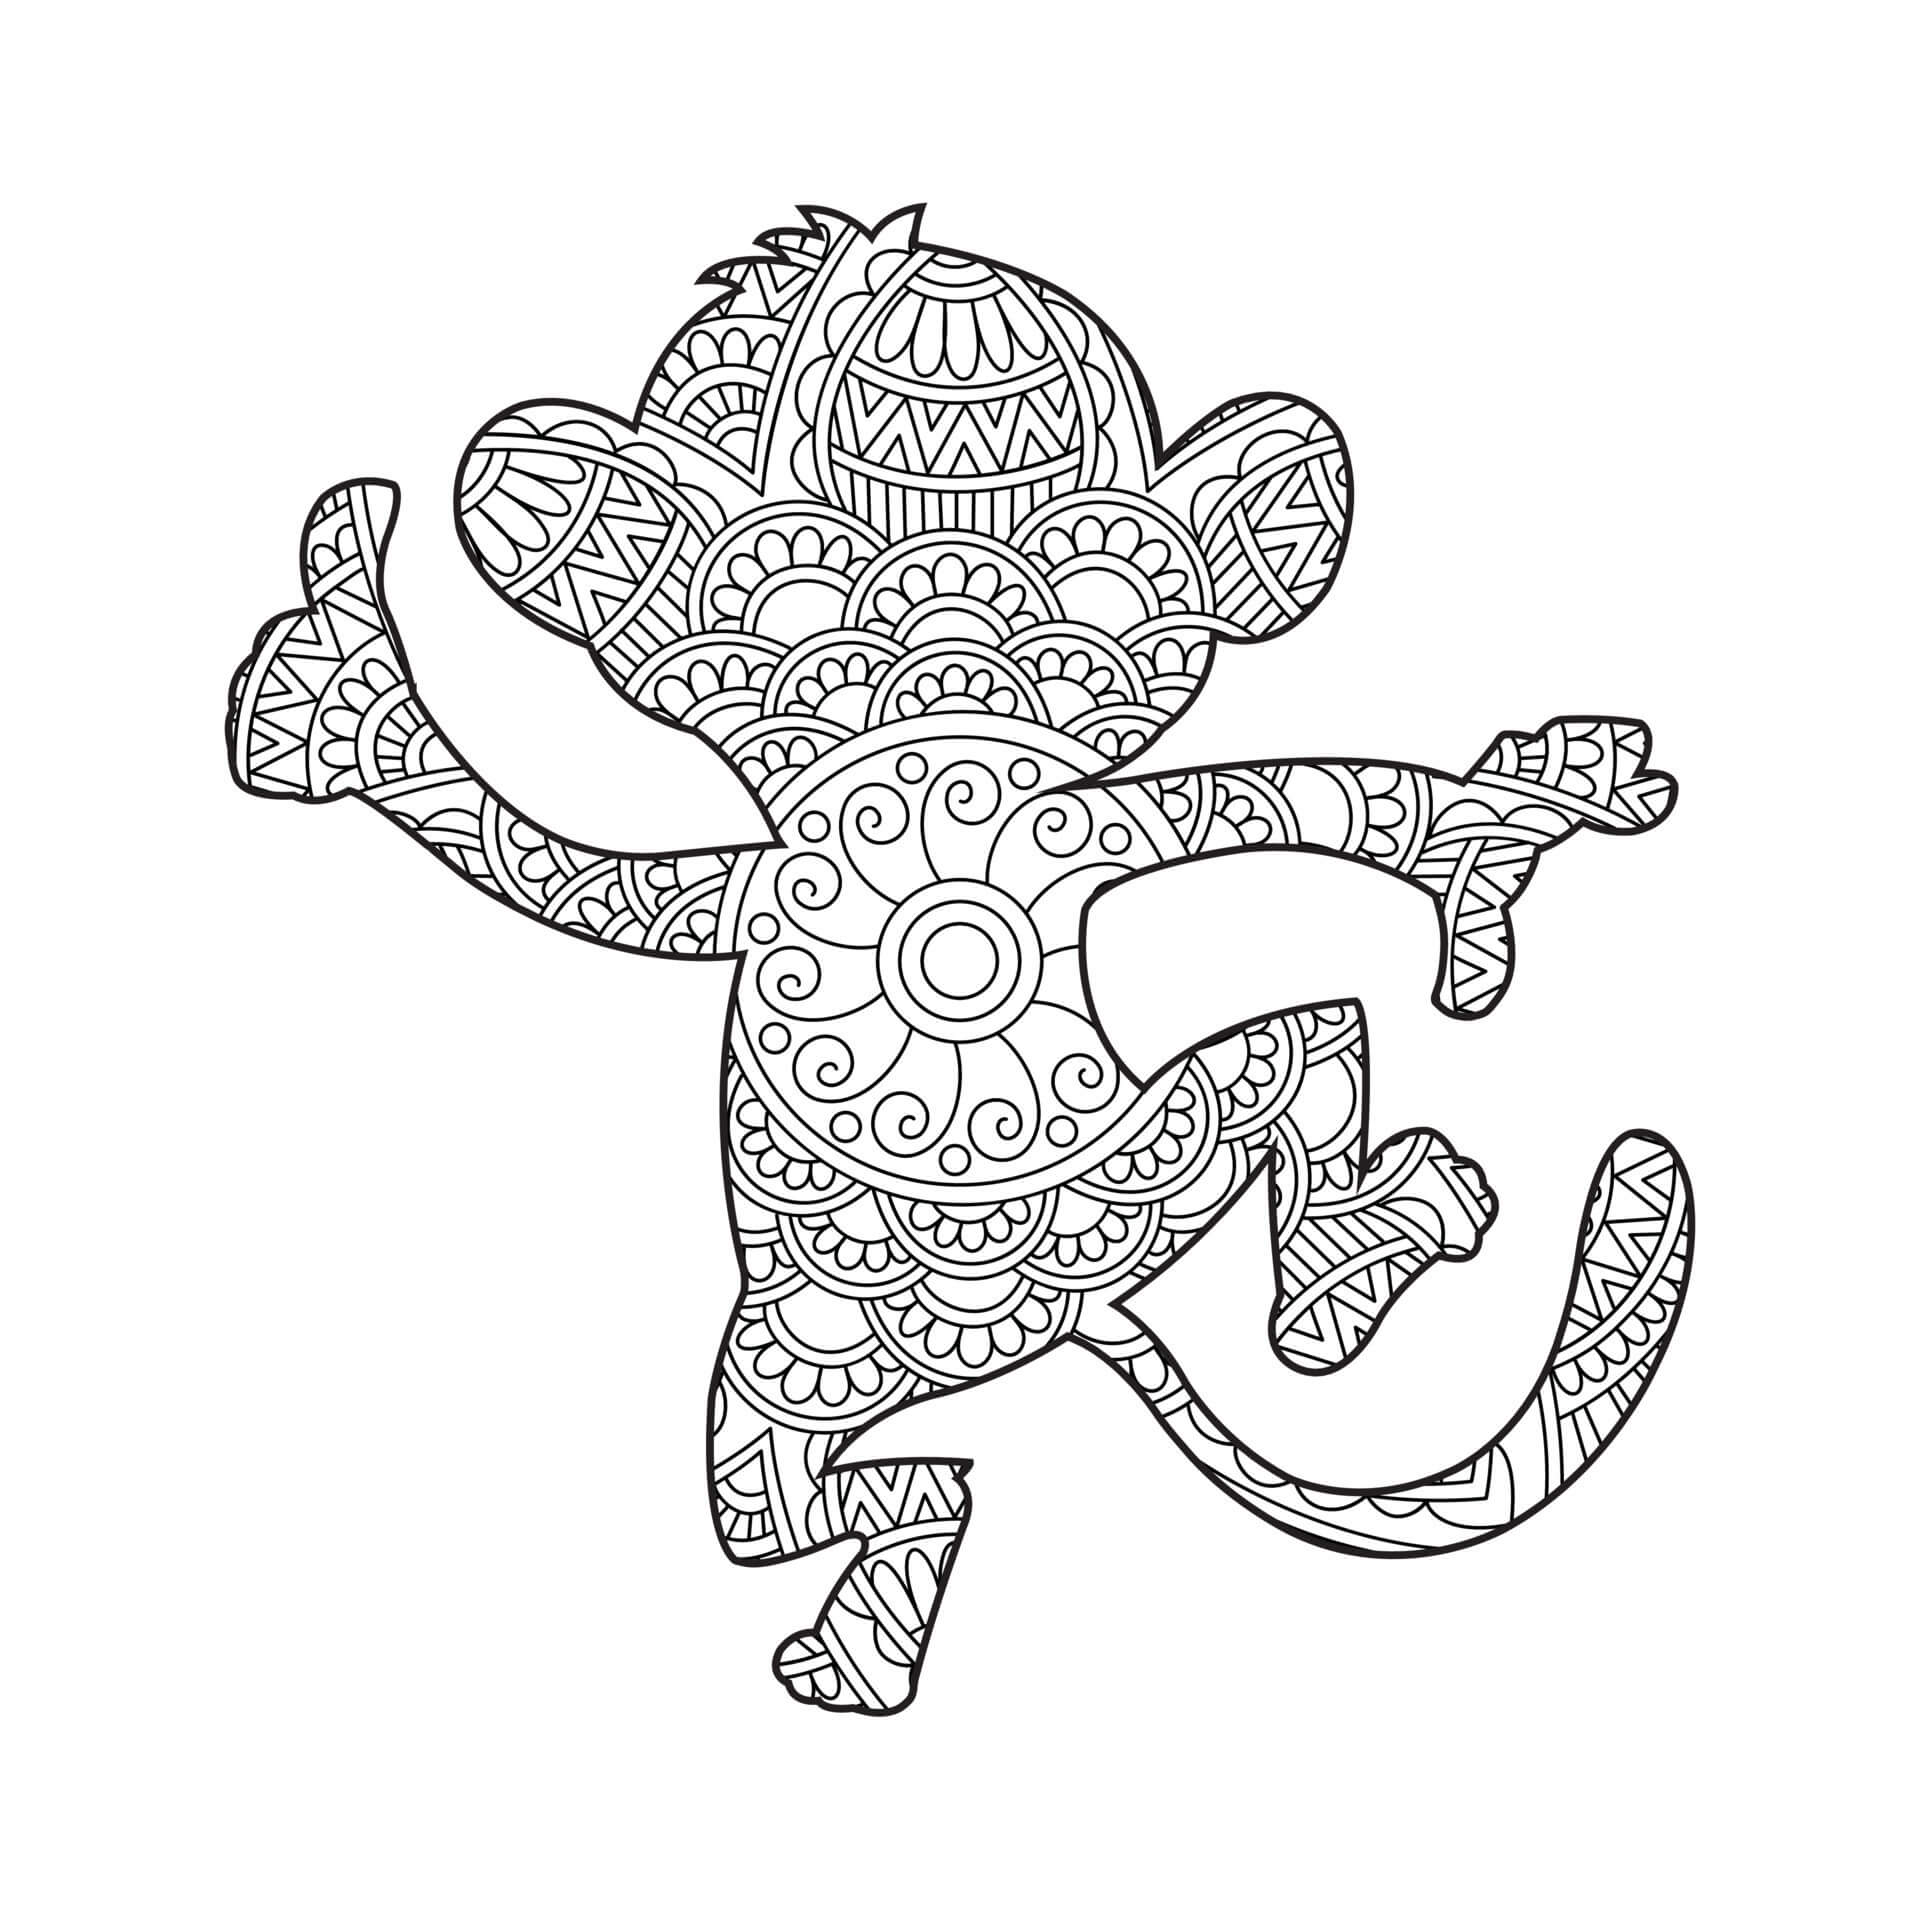 Mandala Monkey Attack Coloring Page Mandalas